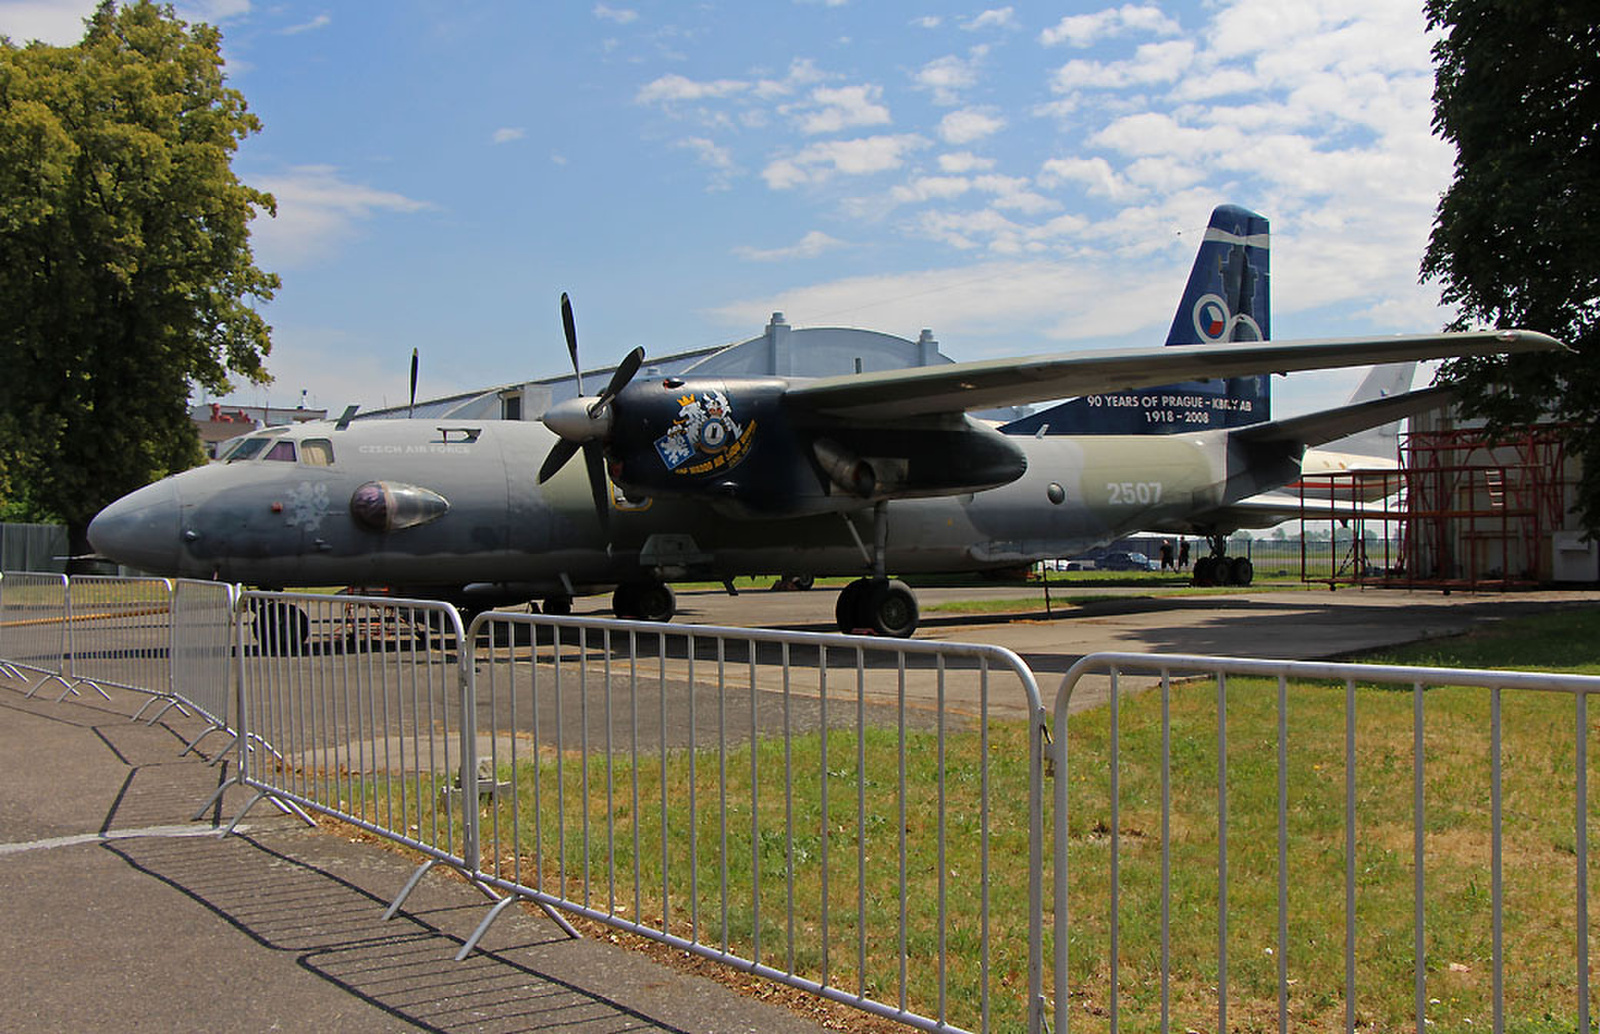 Antonov An-26 1969 Repülőmúzeum